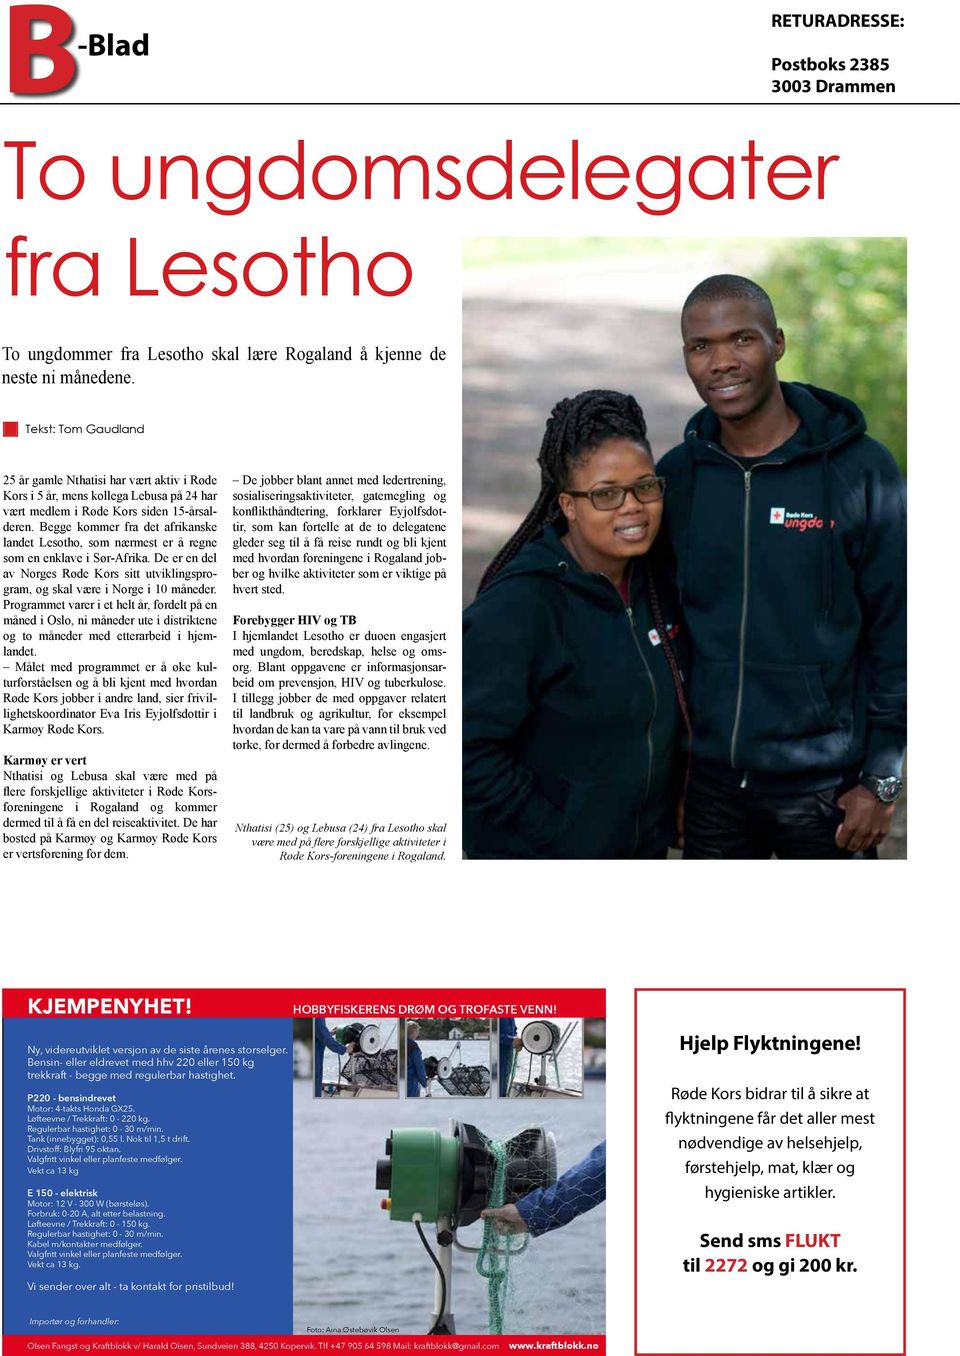 Begge kommer fra det afrikanske landet Lesotho, som nærmest er å regne som en enklave i Sør-Afrika. De er en del av Norges Røde Kors sitt utviklingsprogram, og skal være i Norge i 10 måneder.